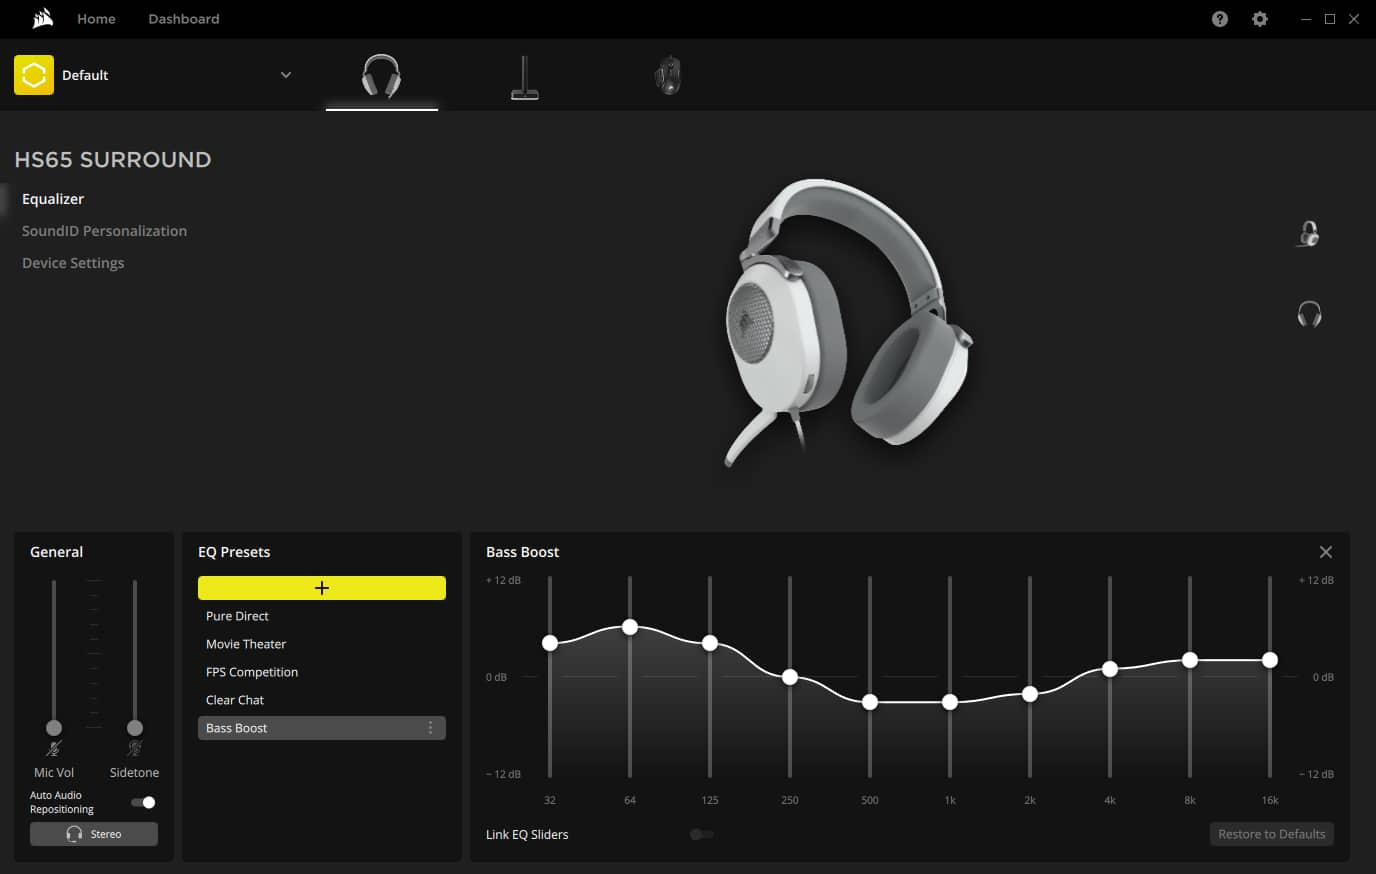 Captura de pantalla del software Corsair iCue para HS65 SURROUND para personalizar y controlar el audio y el tono local. 